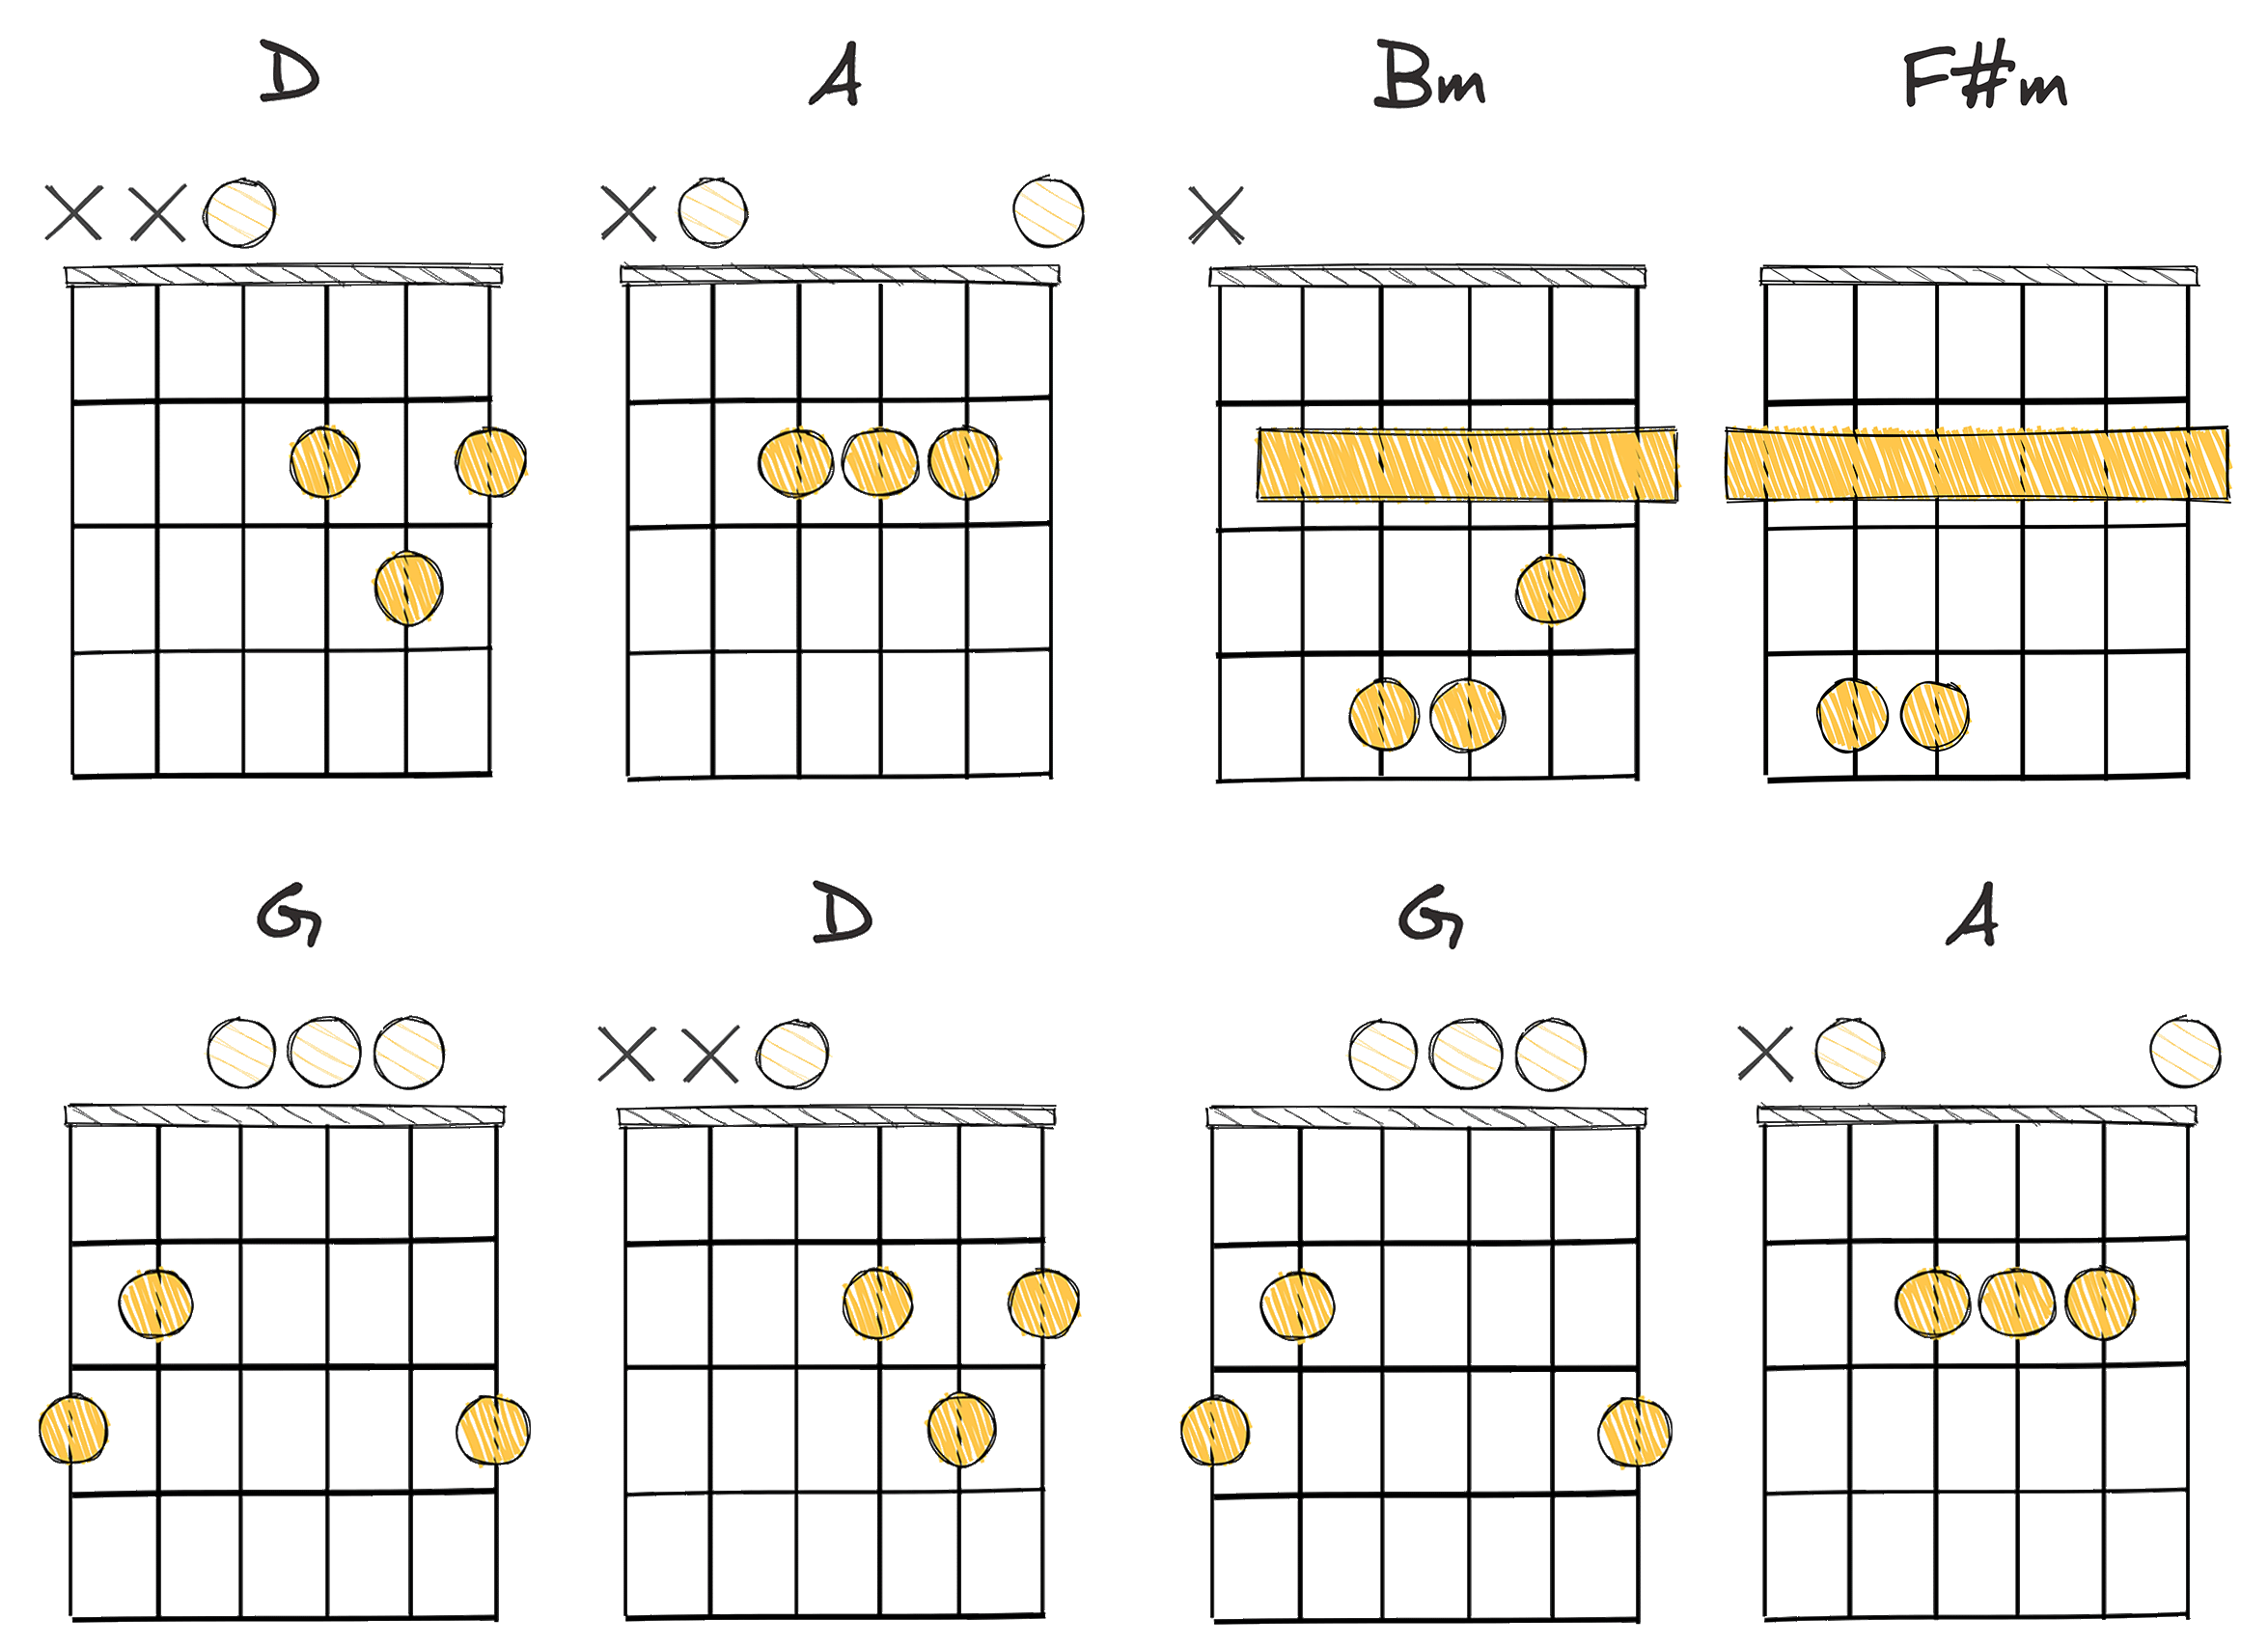 I-V-vi-iii-IV-I-IV-V (1-5-6-3-4-1-4-5) chords diagram